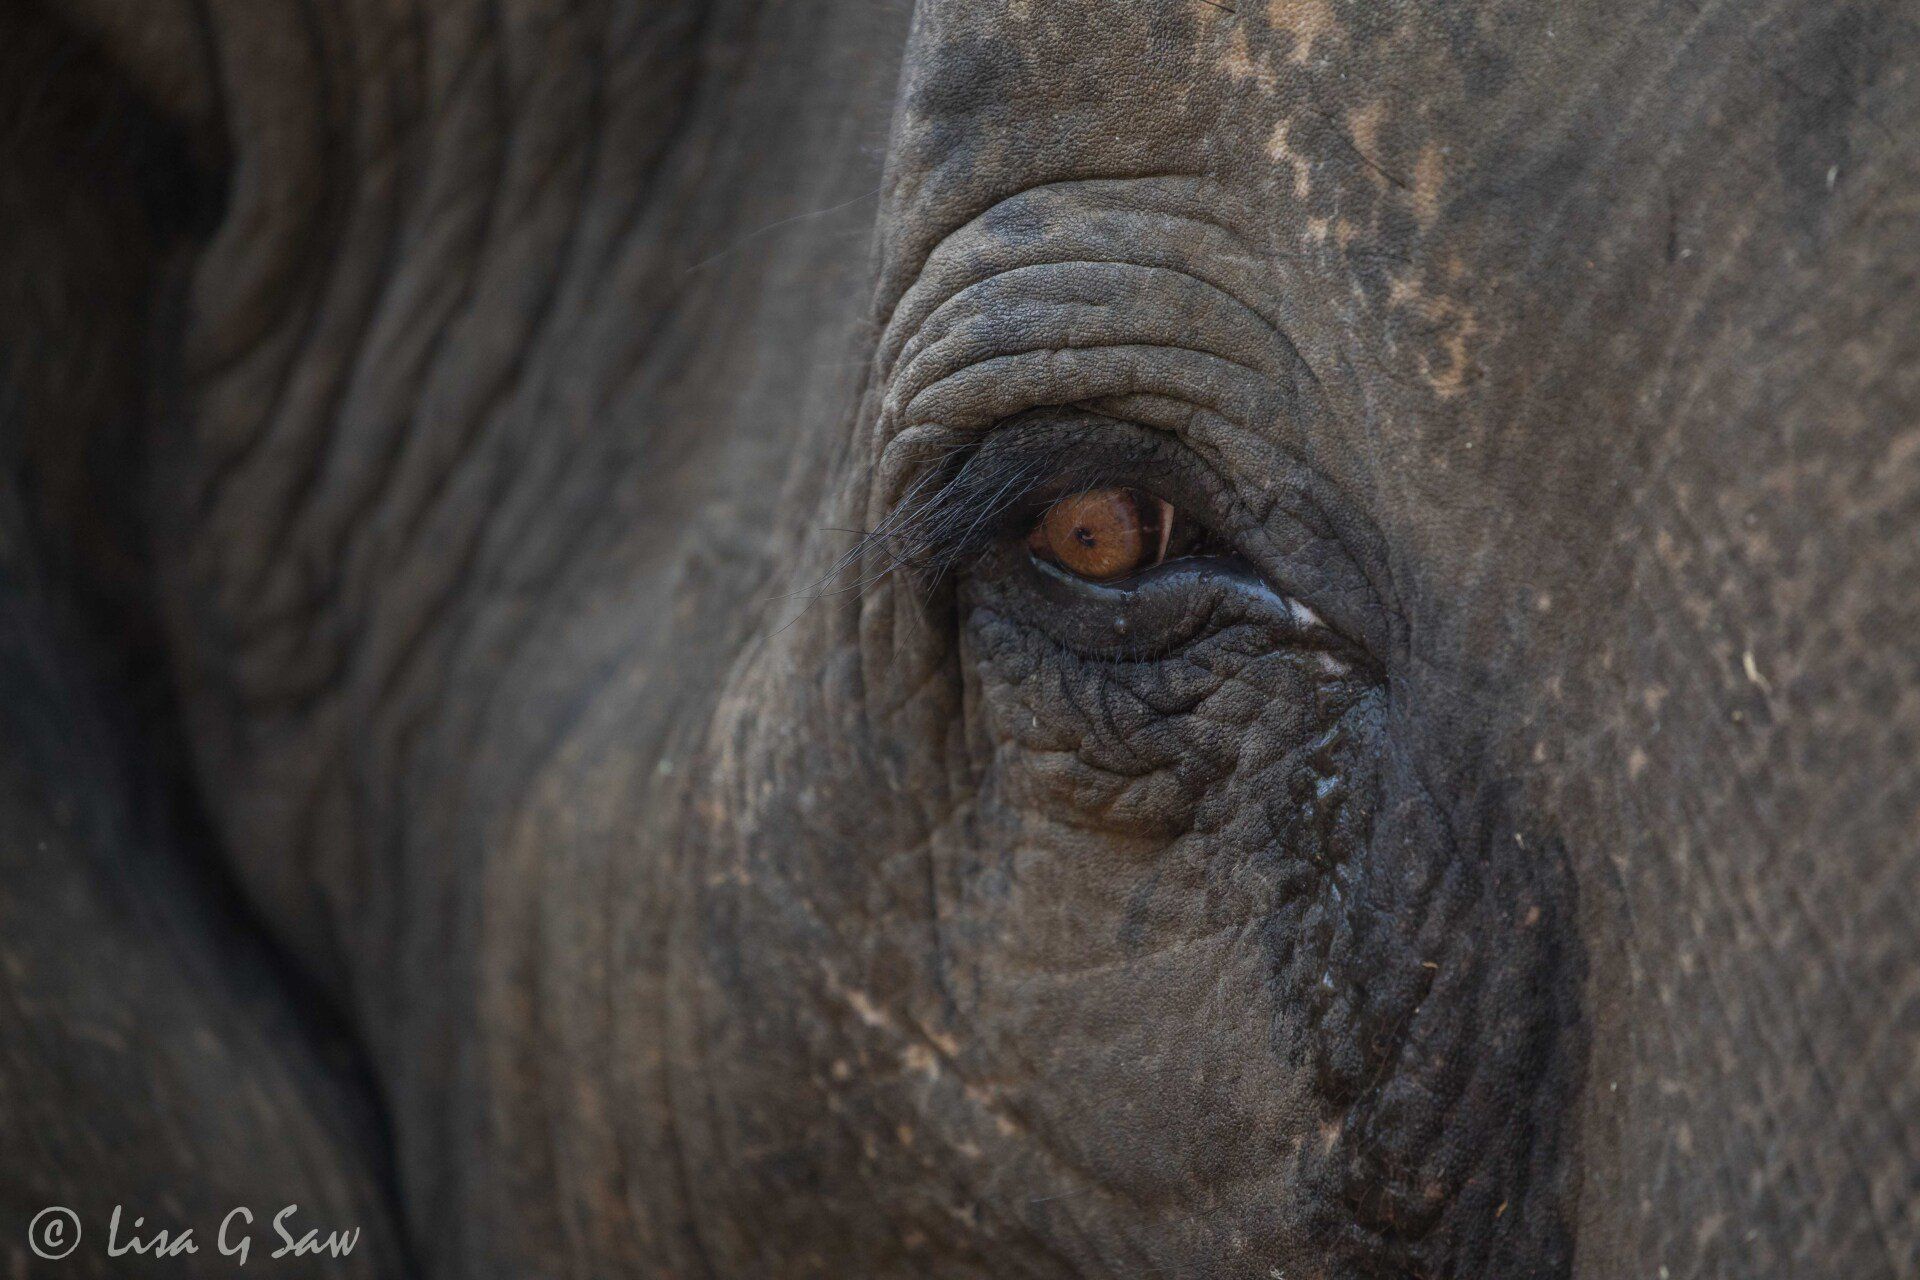 Close up of Asian Elephant eye